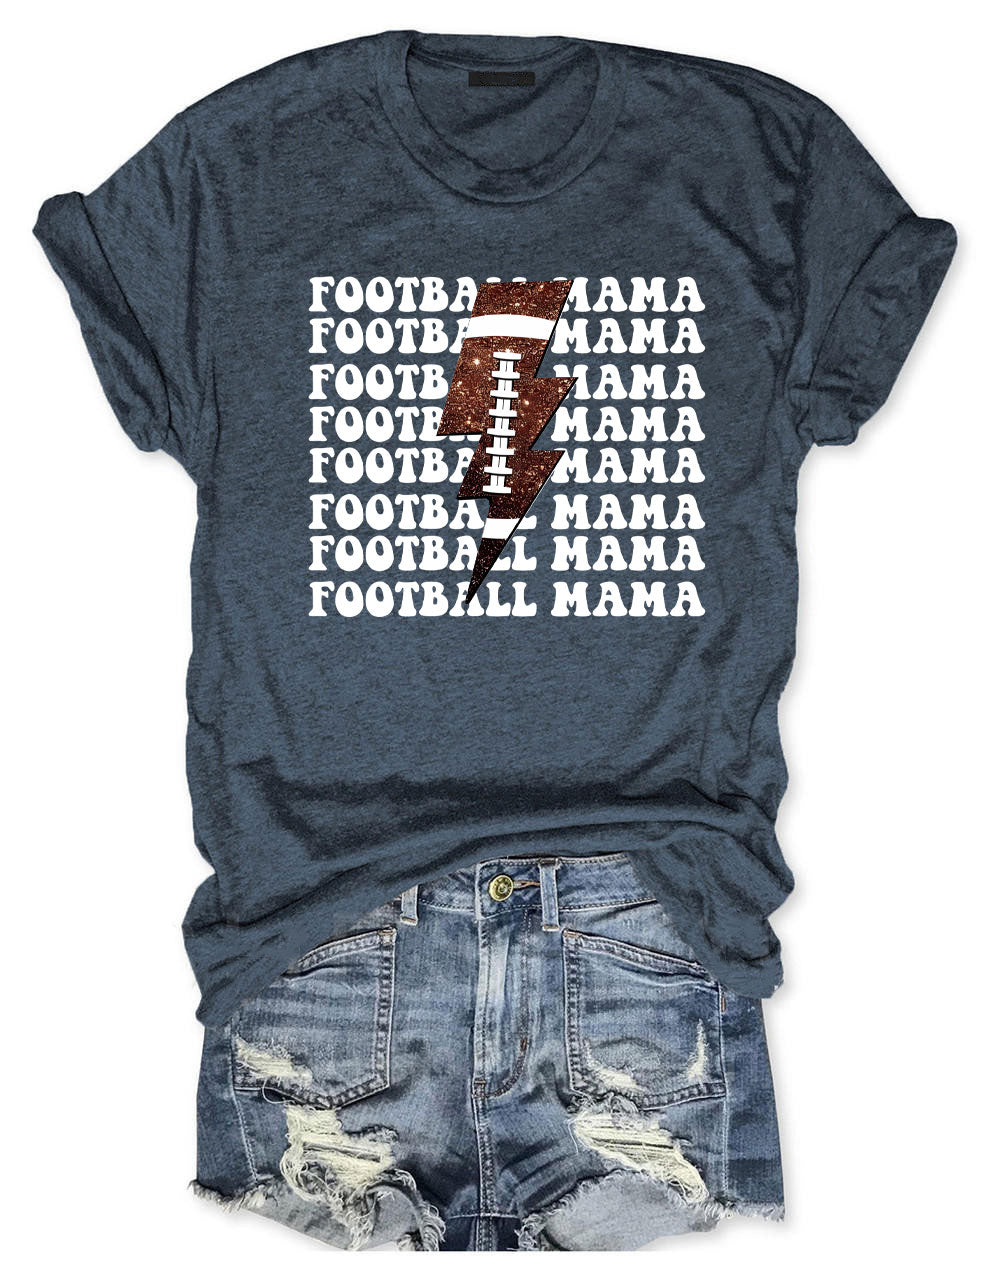 Football Mama T-Shirt